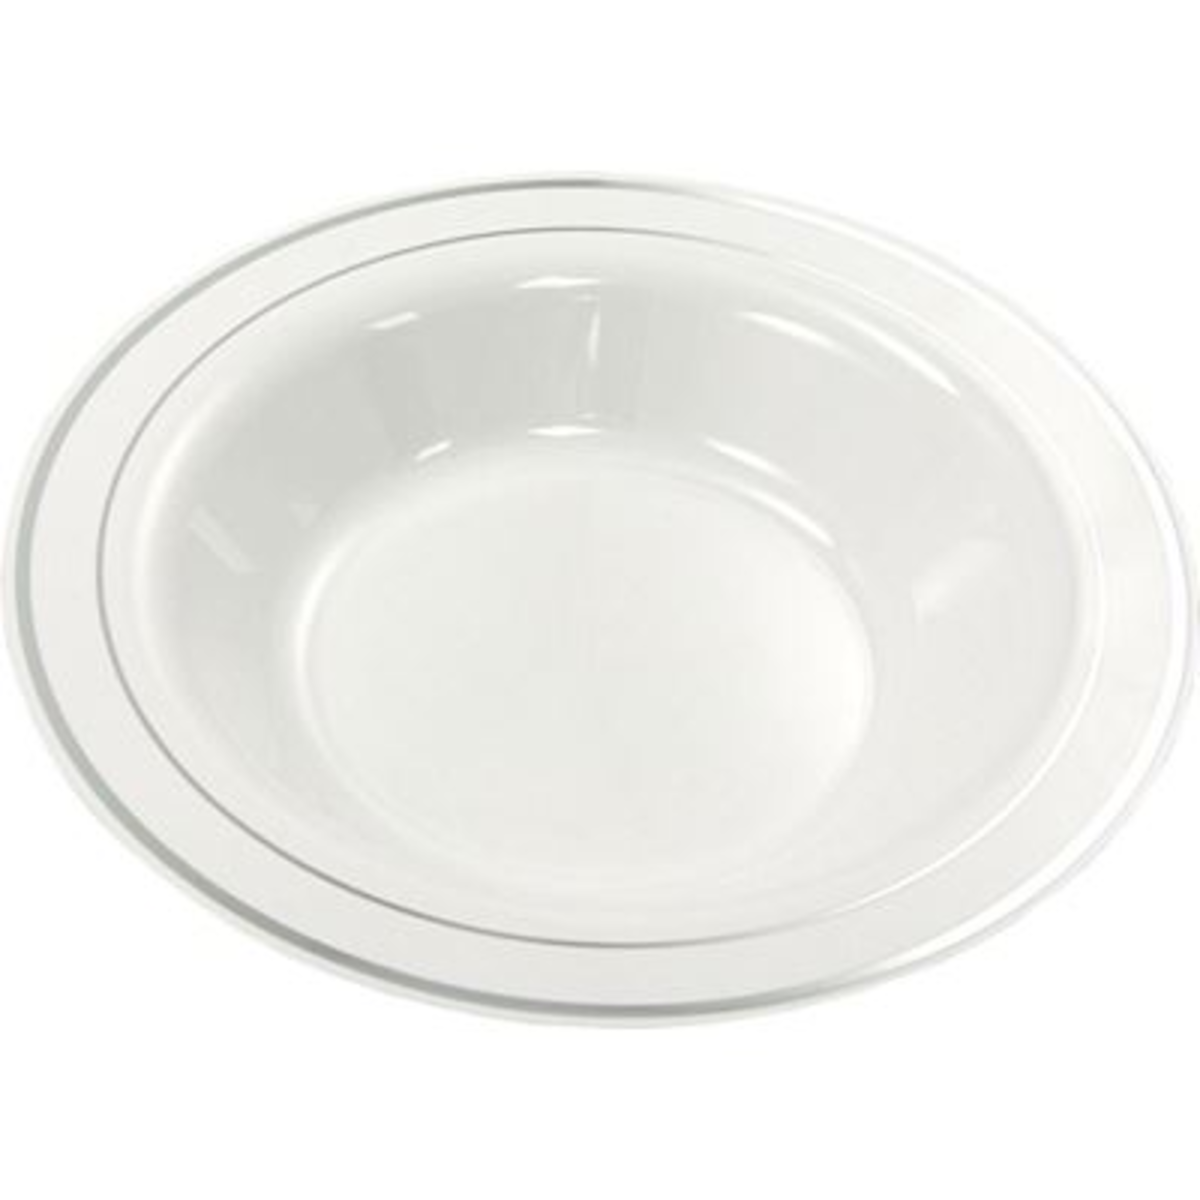 Assiette plastique jetable creuse blanche